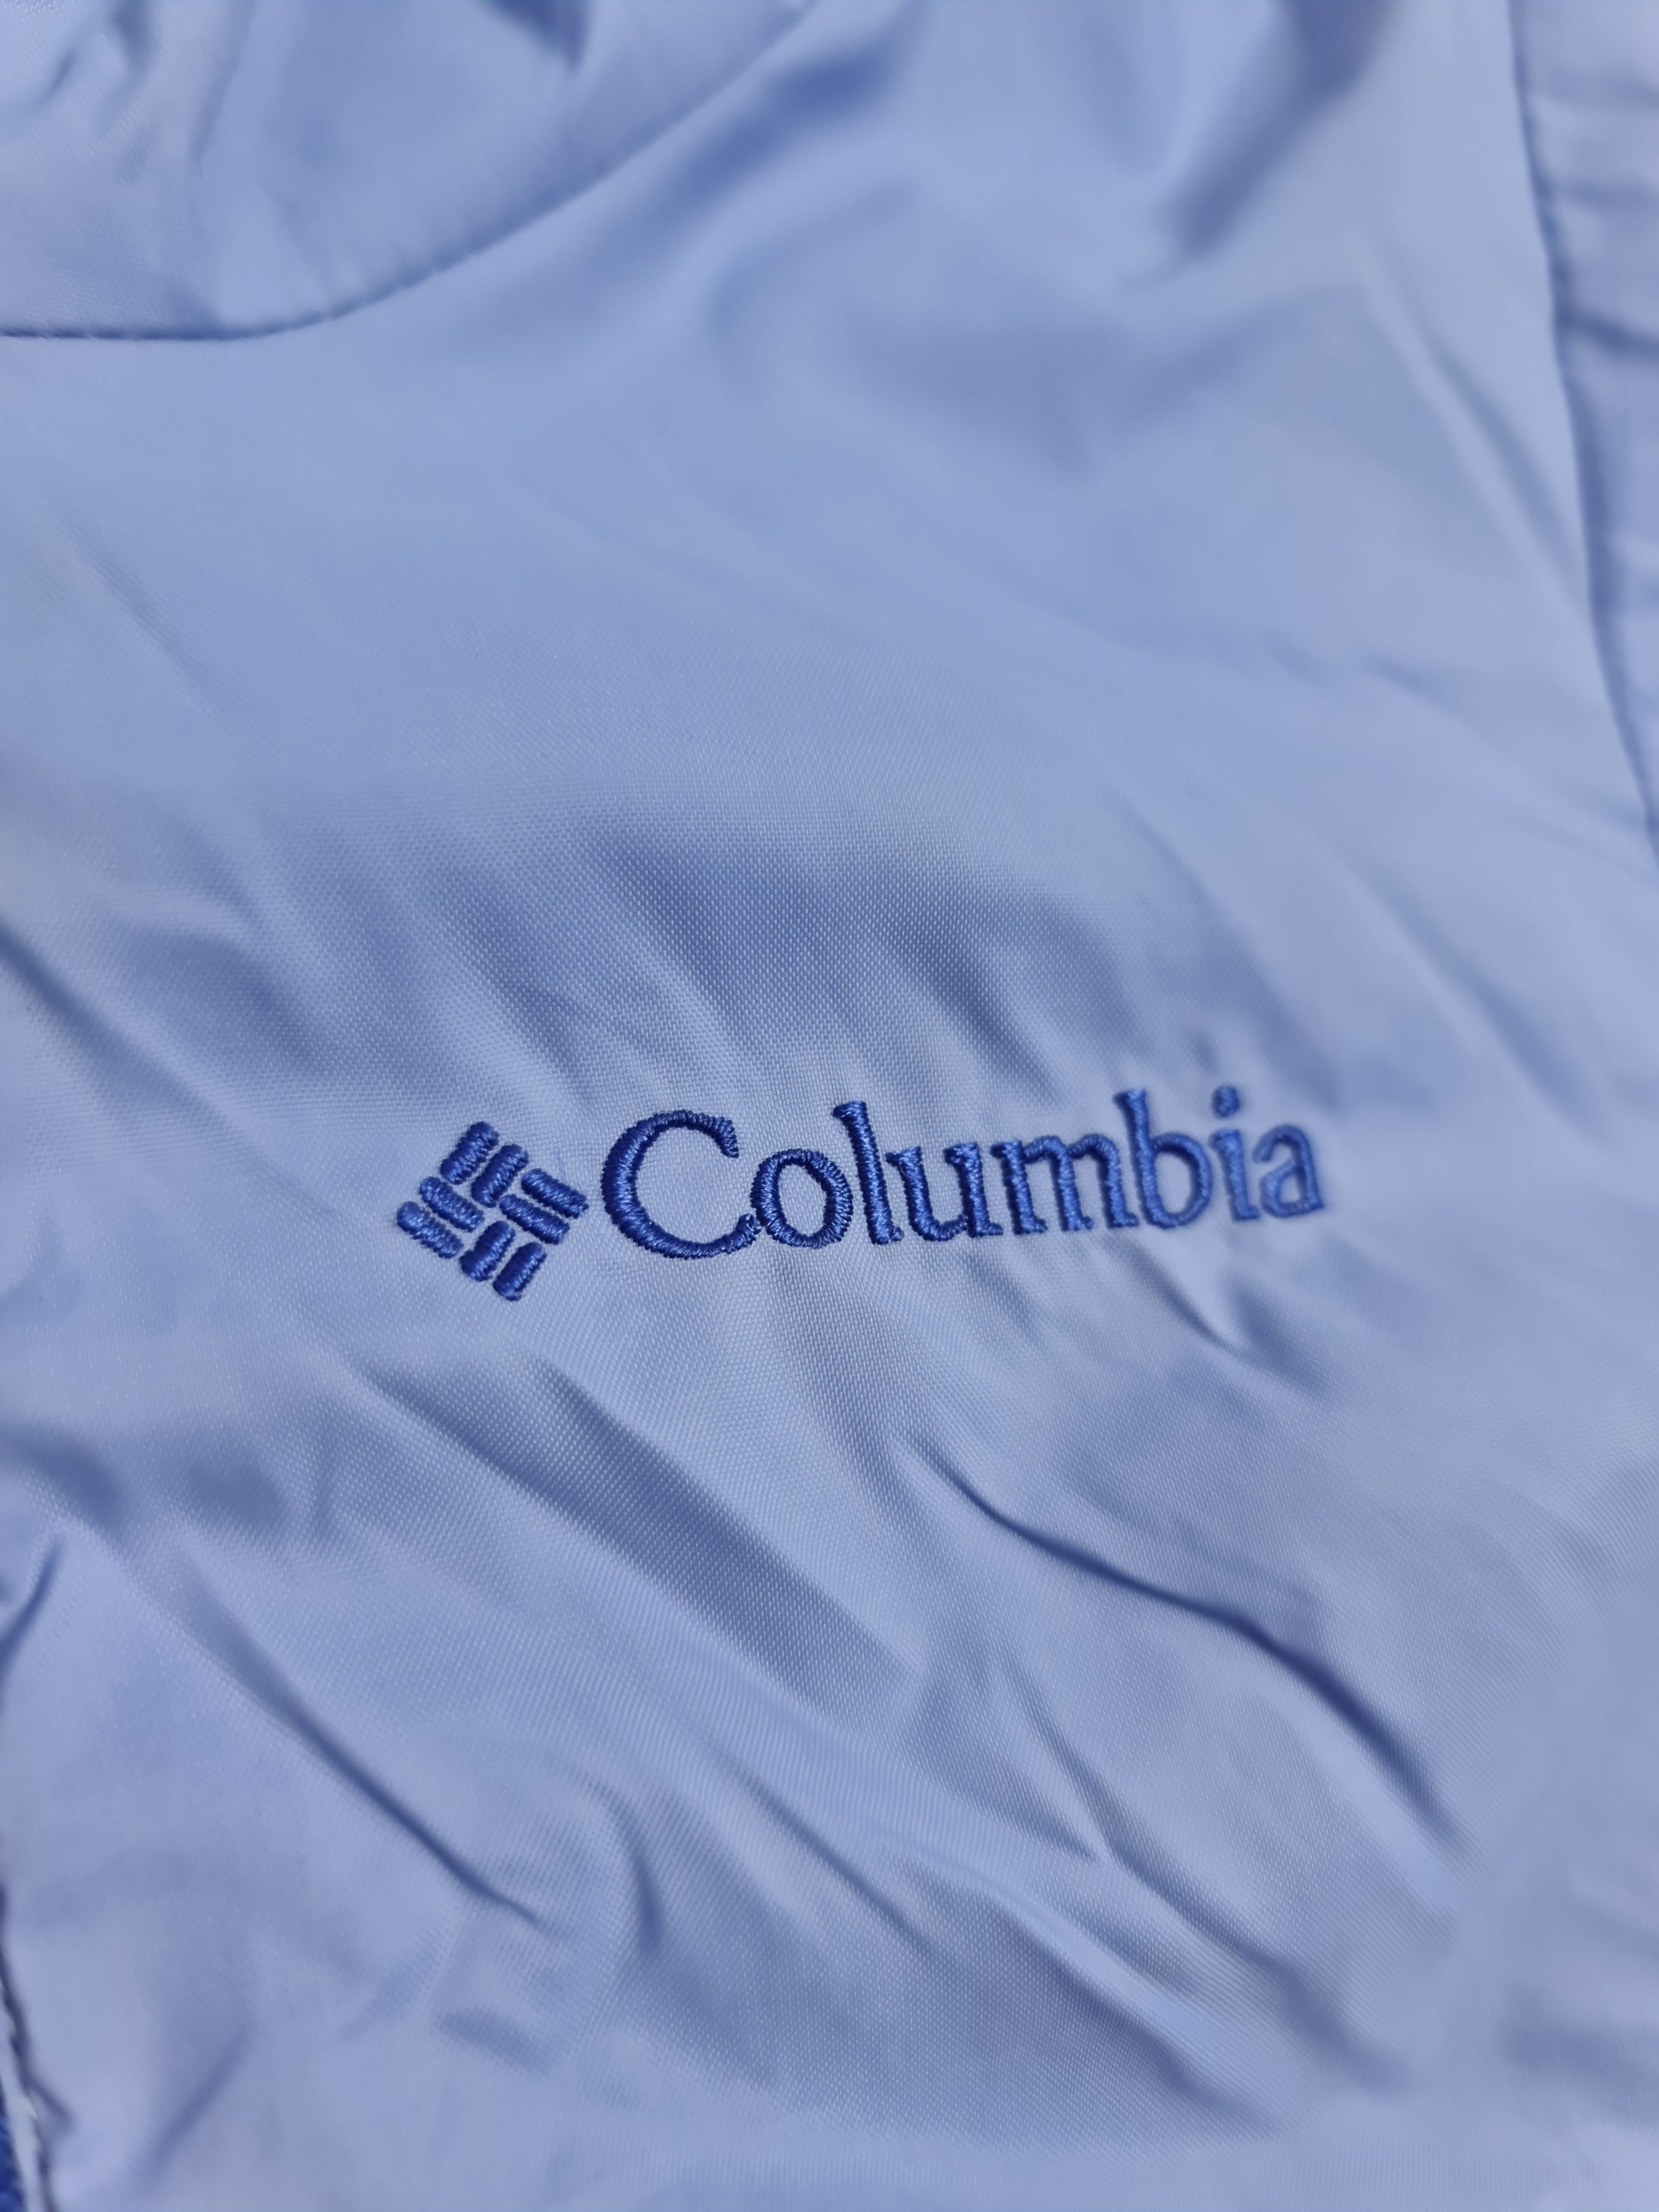 Suéter morado marca Columbia, talla 2 años